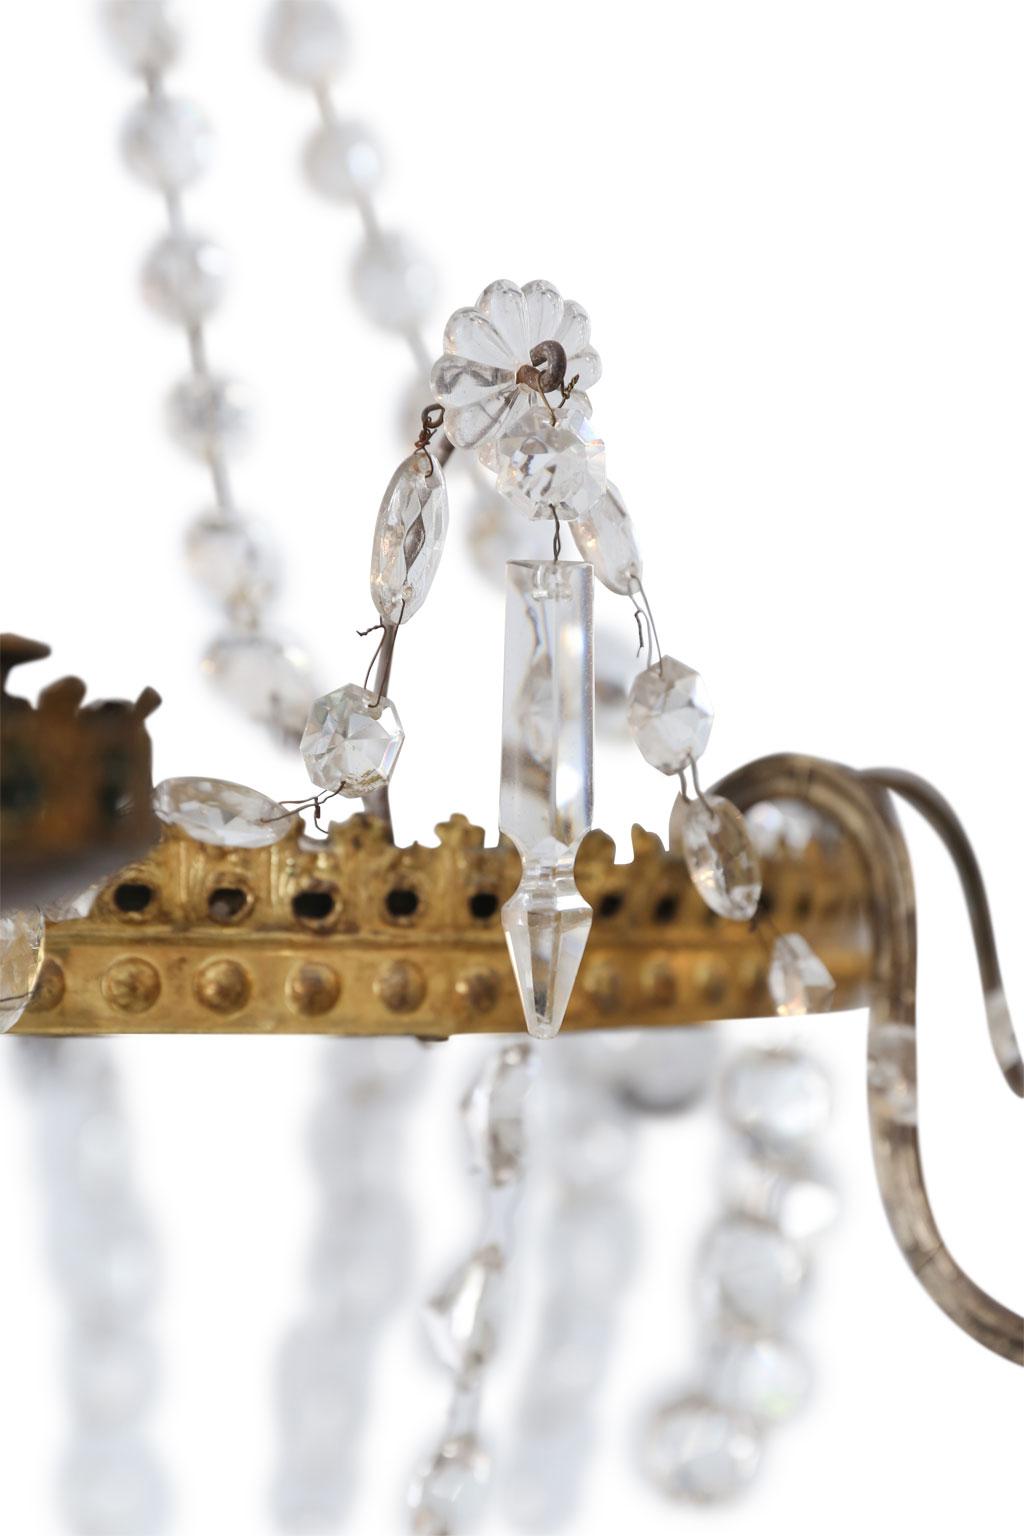 Lustre néoclassique en or et cristal, vers 1860-1880, avec deux niveaux d'anneaux d'or percés, enfilés avec des prismes et des pendentifs en cristal. Ce luminaire italien est nouvellement câblé pour être utilisé aux États-Unis, avec huit bras